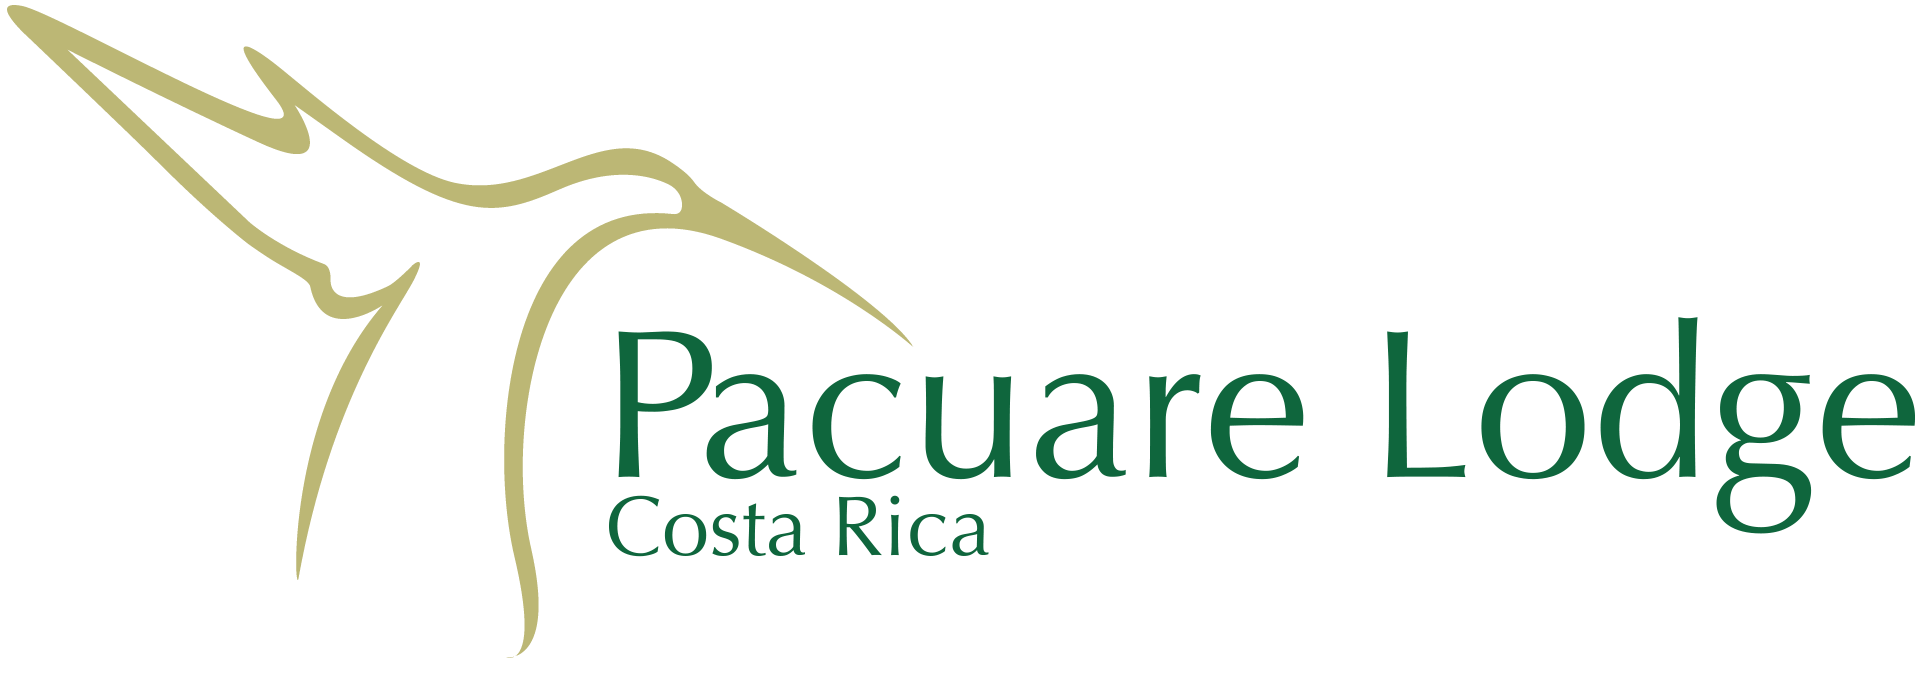 Lodge Logo - The Pacuare Lodge, Costa Rica Pacuare Lodge, Costa Rica